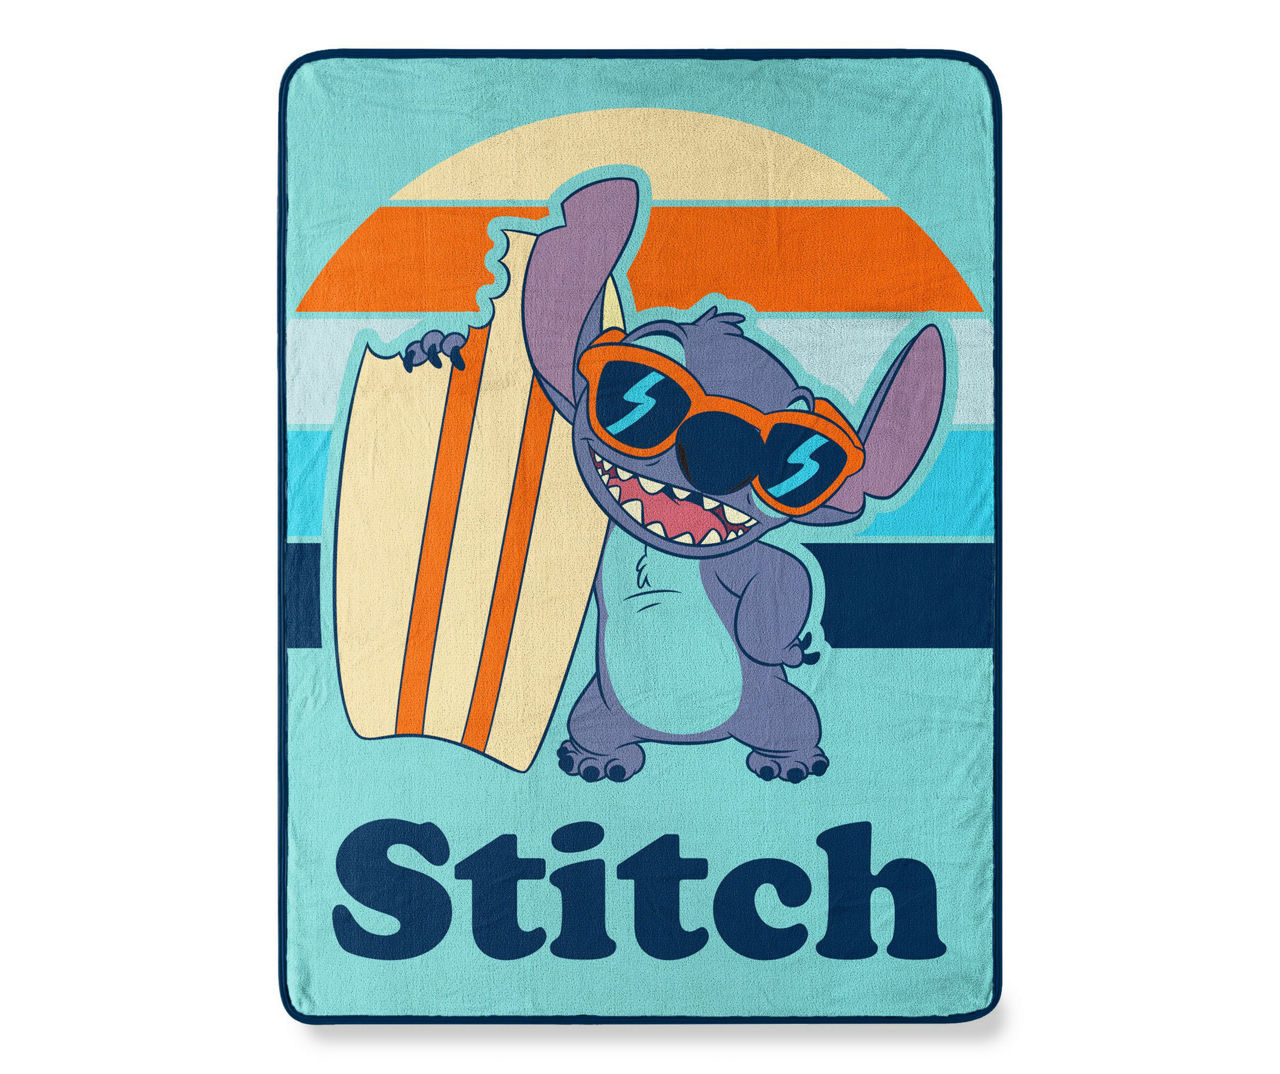 Lilo and Stitch in the Sun